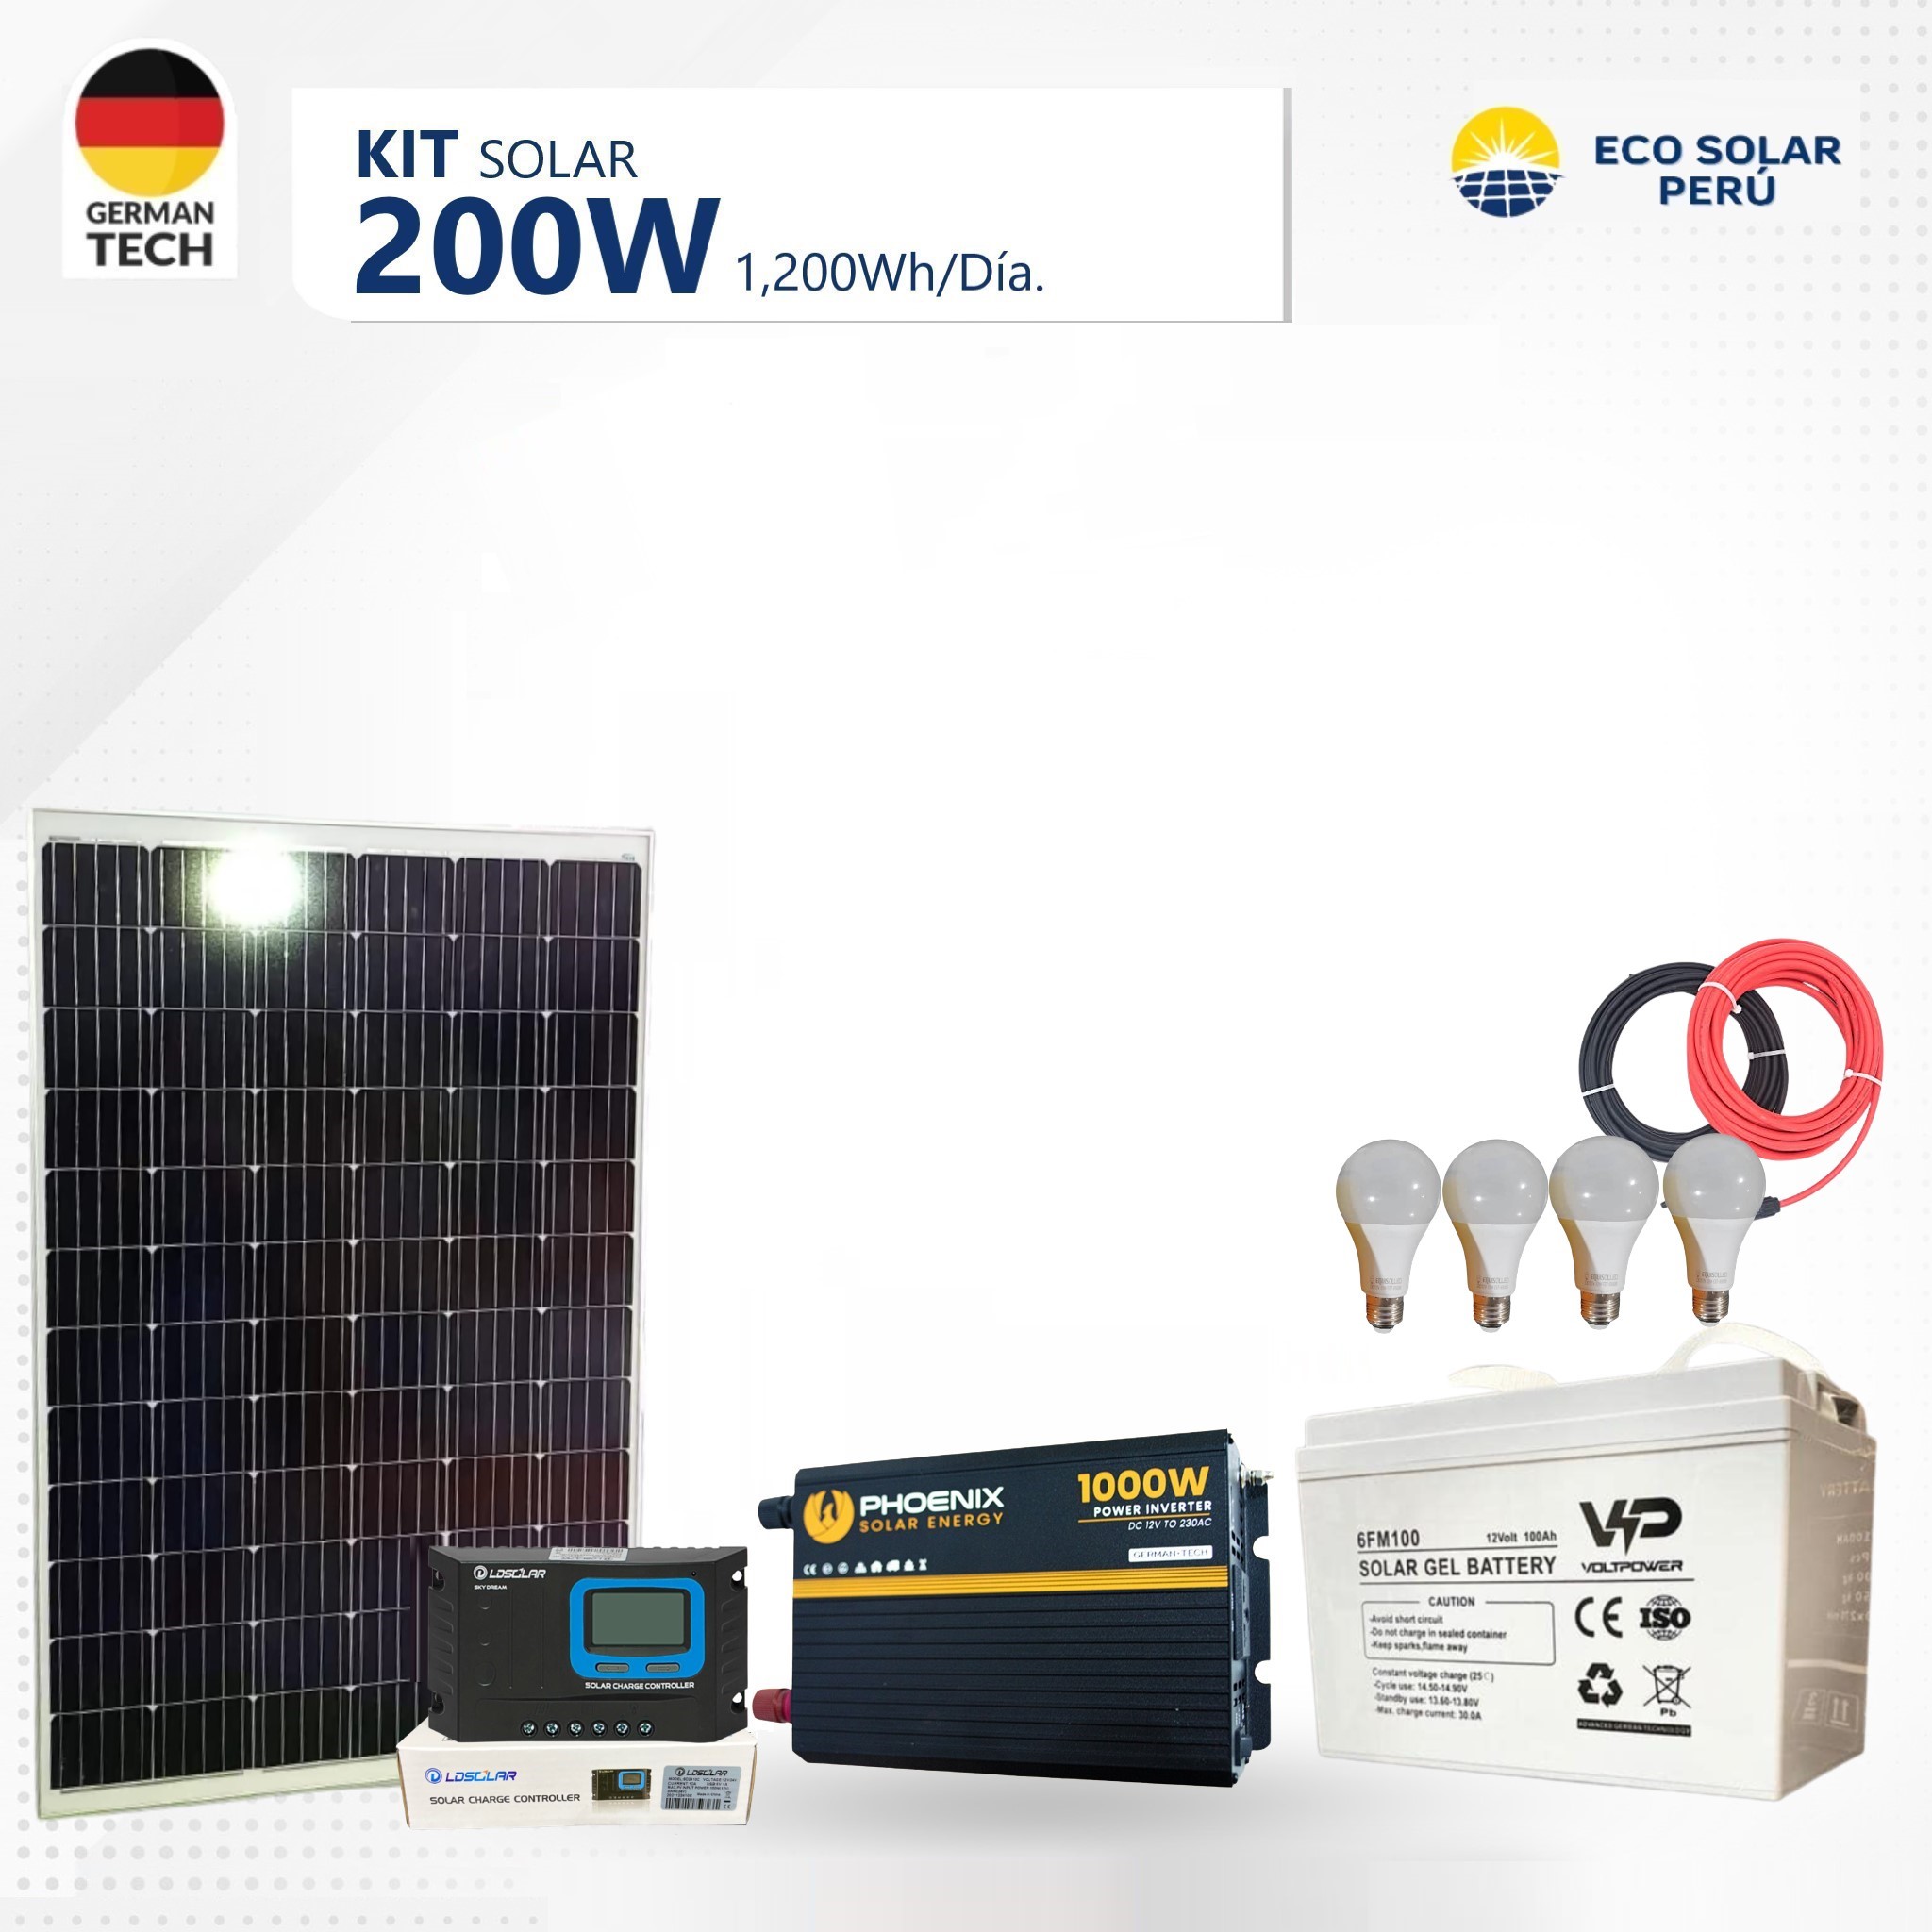 Kit Solar 200W / 1,200Wh Día.